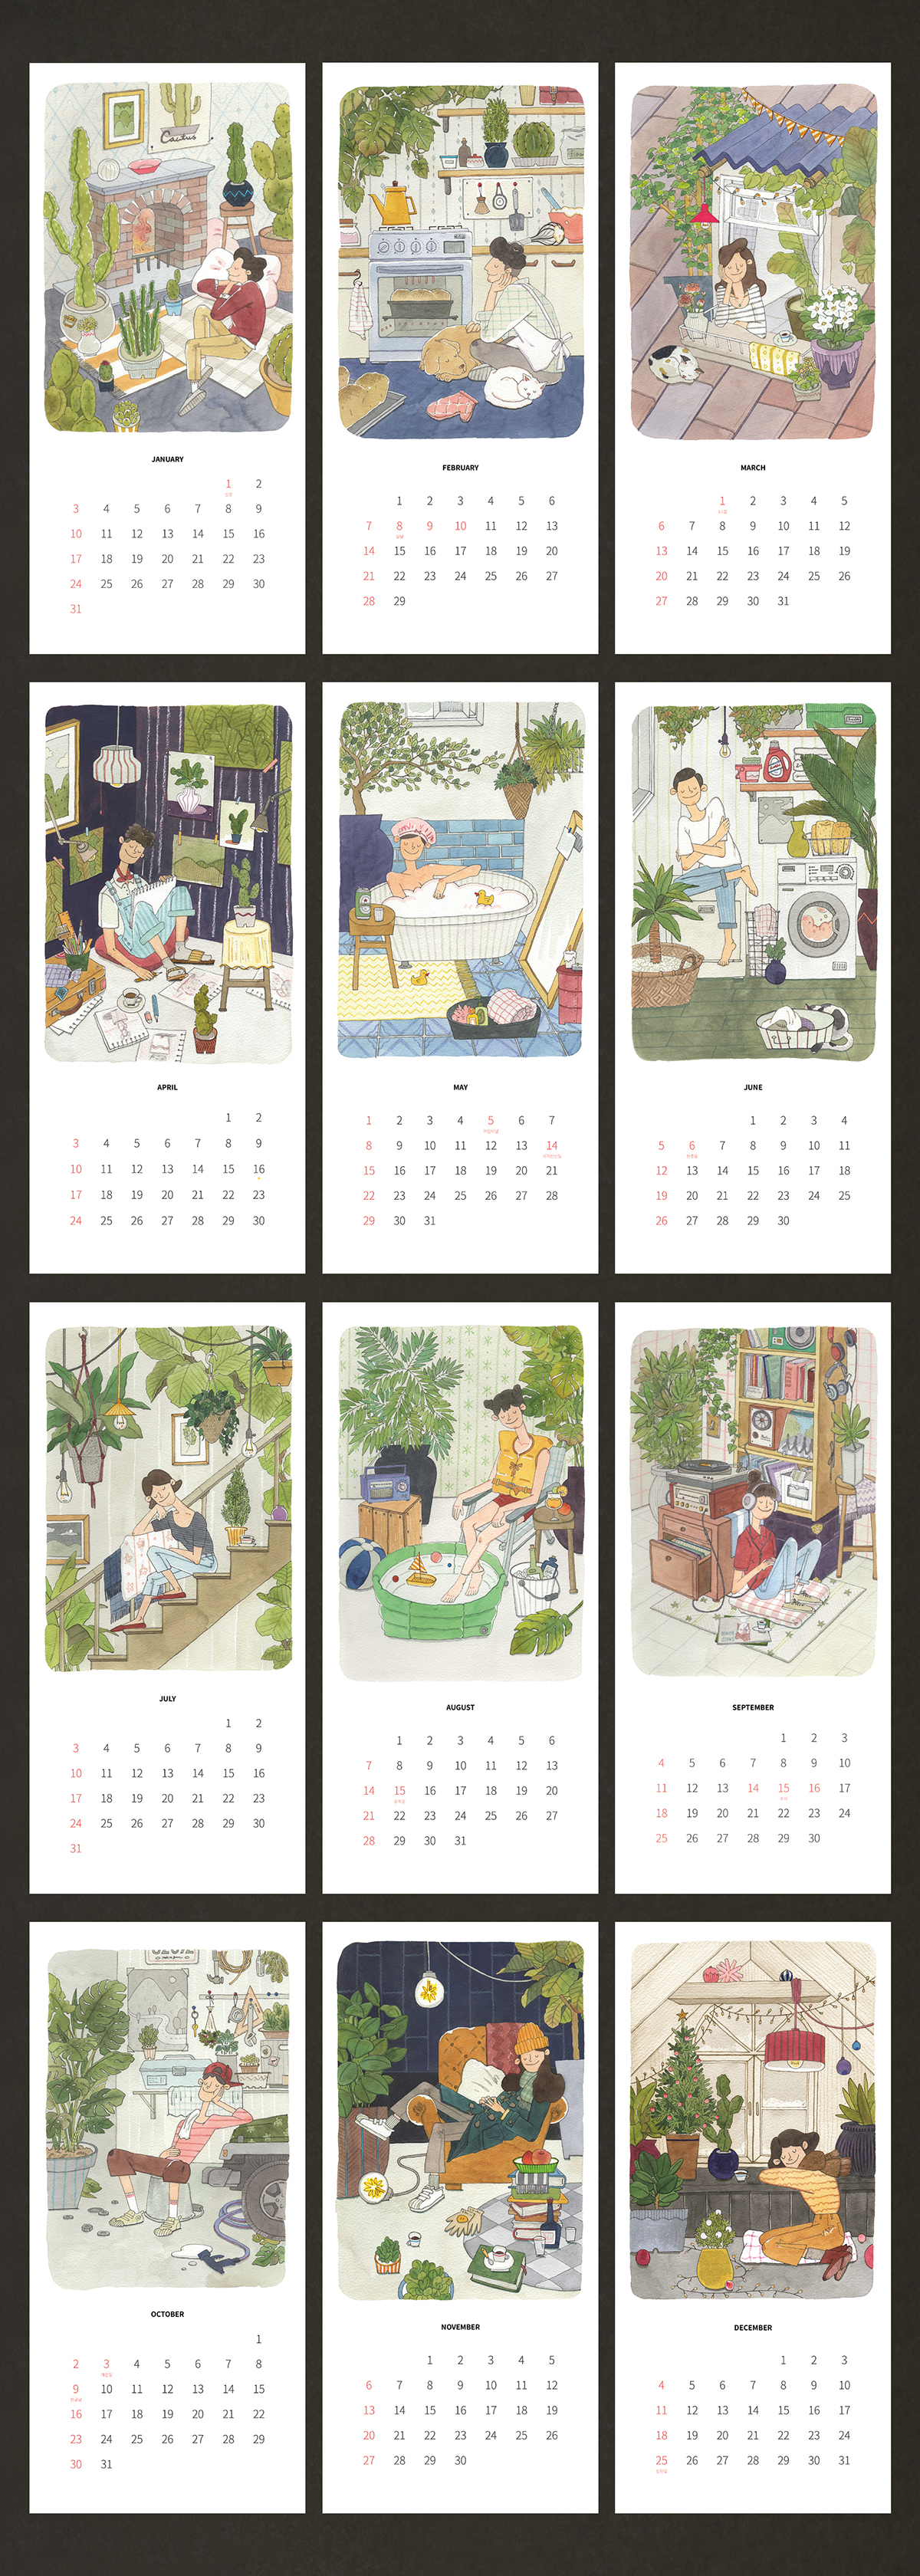 illustrations garden forest watercolor rest new year calendar calendar 2016